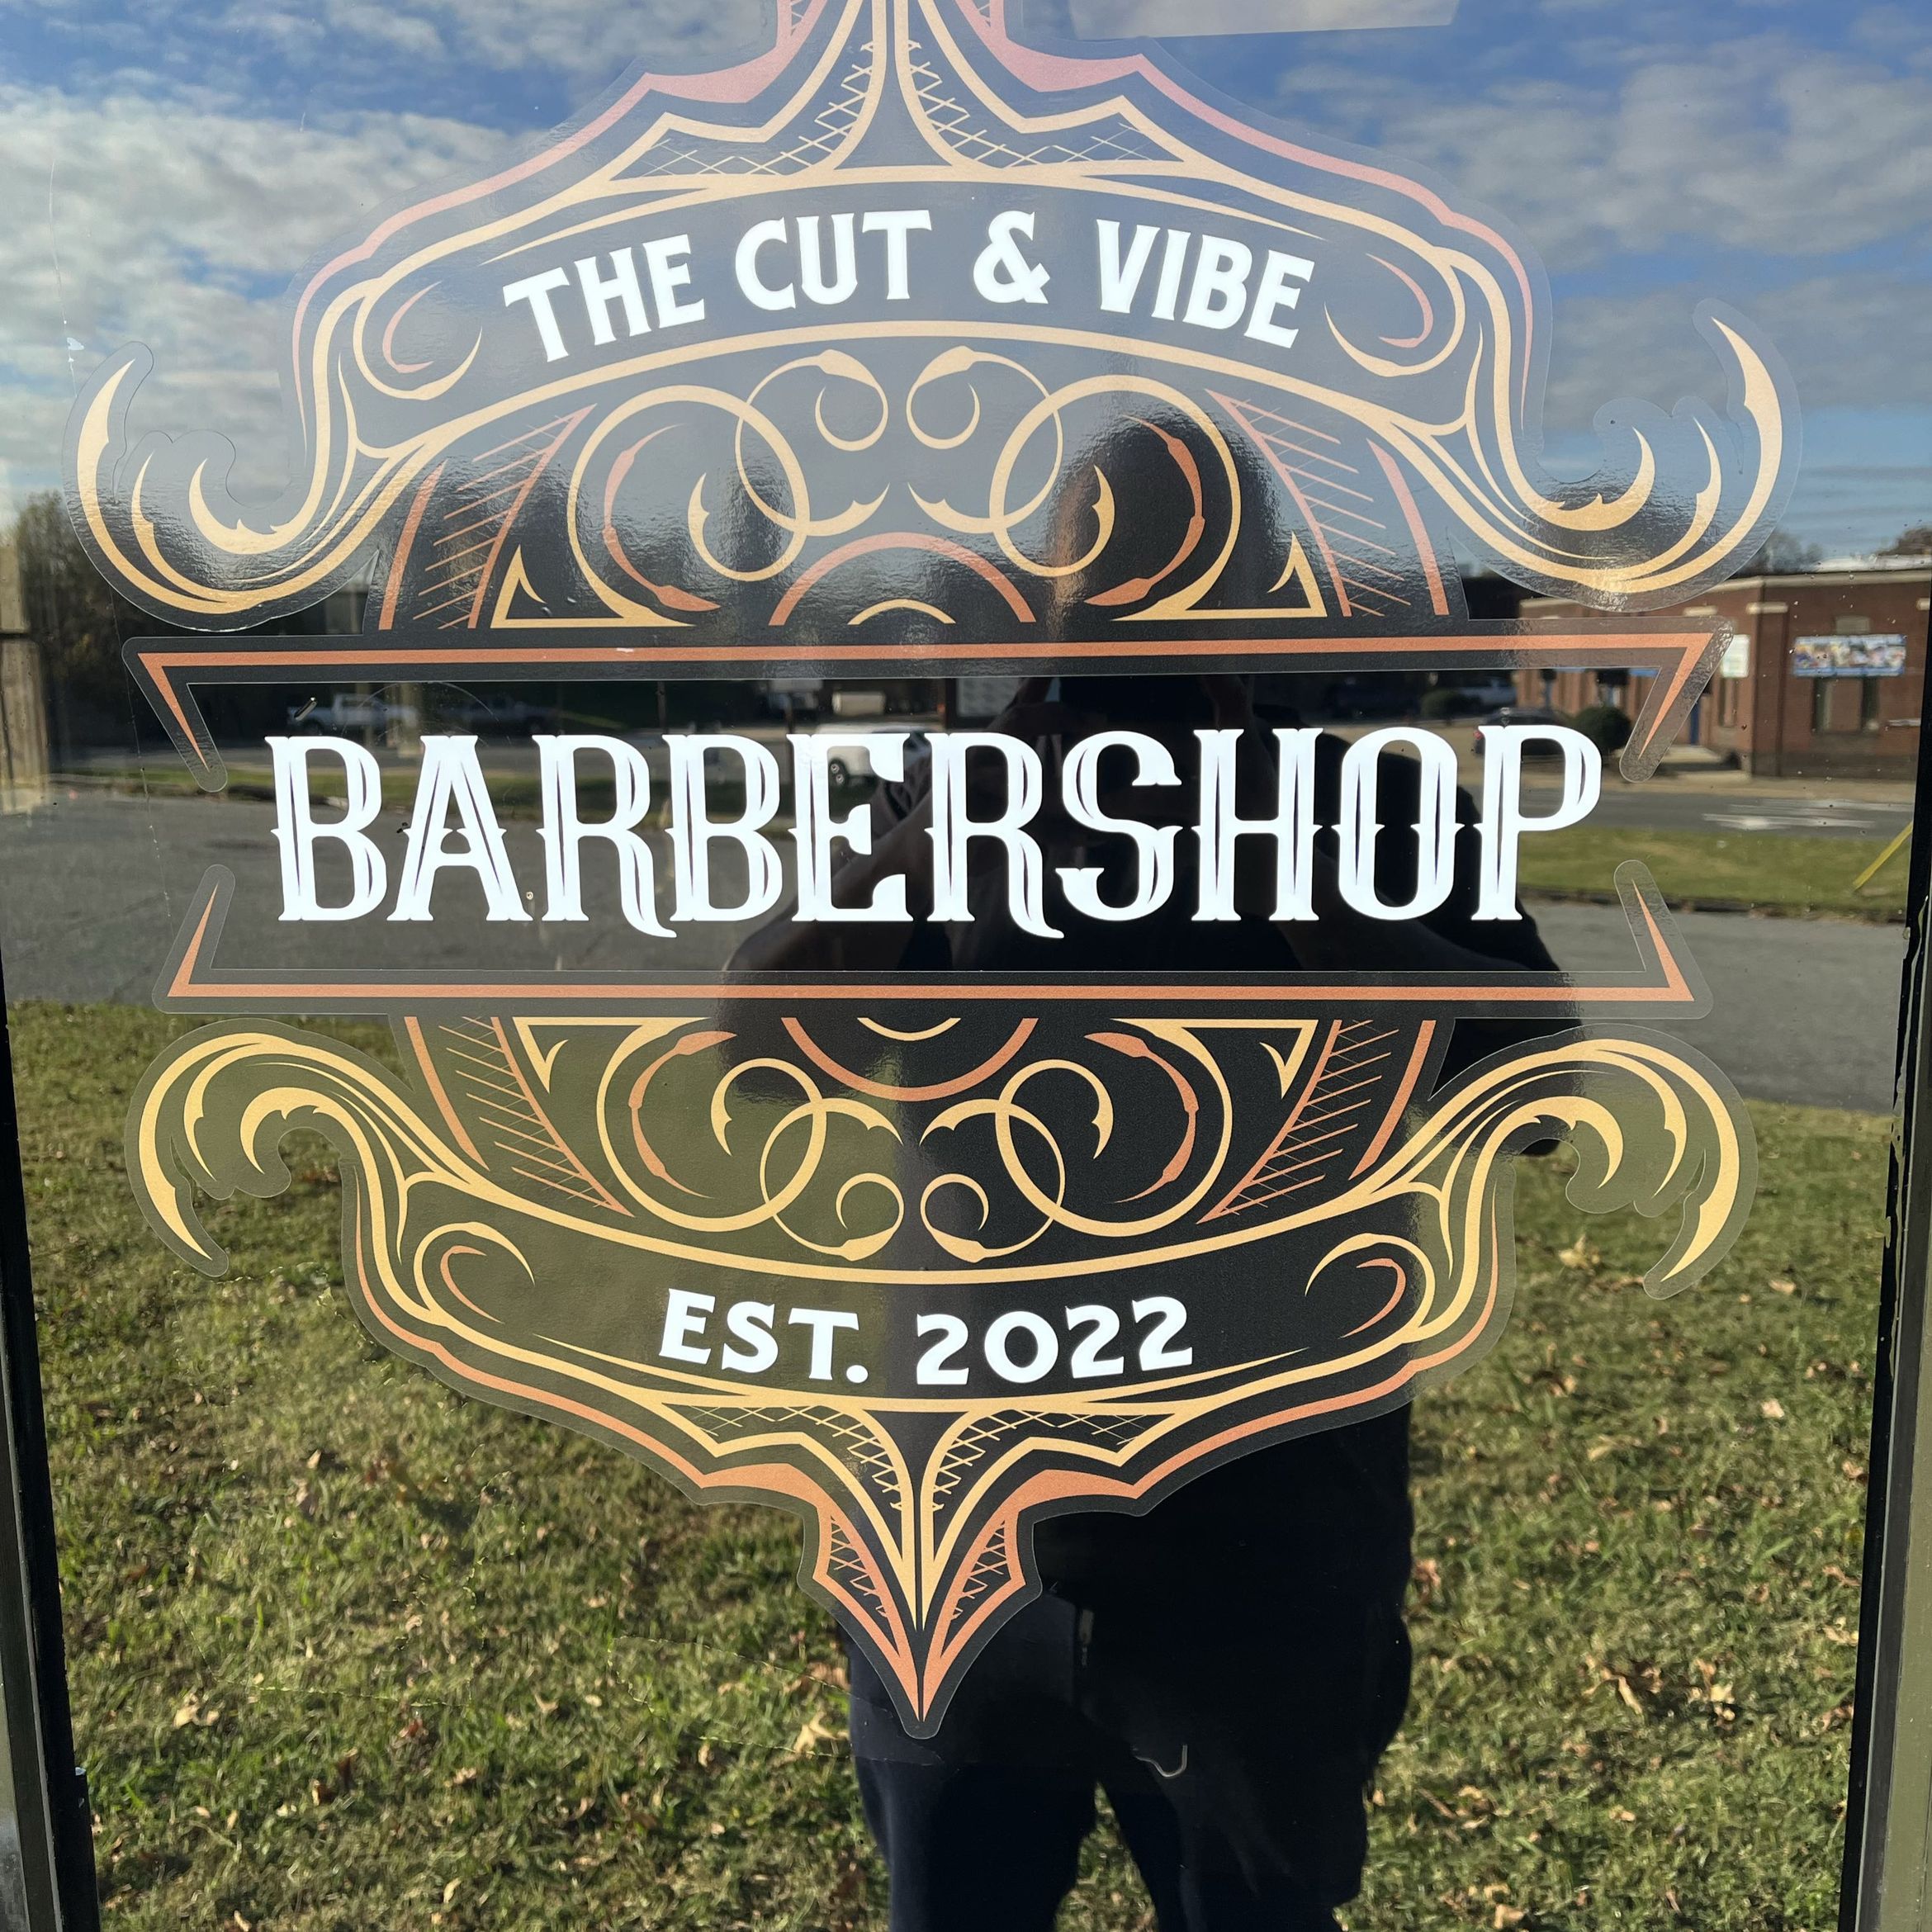 The Cut & Vibe Barbershop, 140 Graves St, Burlington, 27217